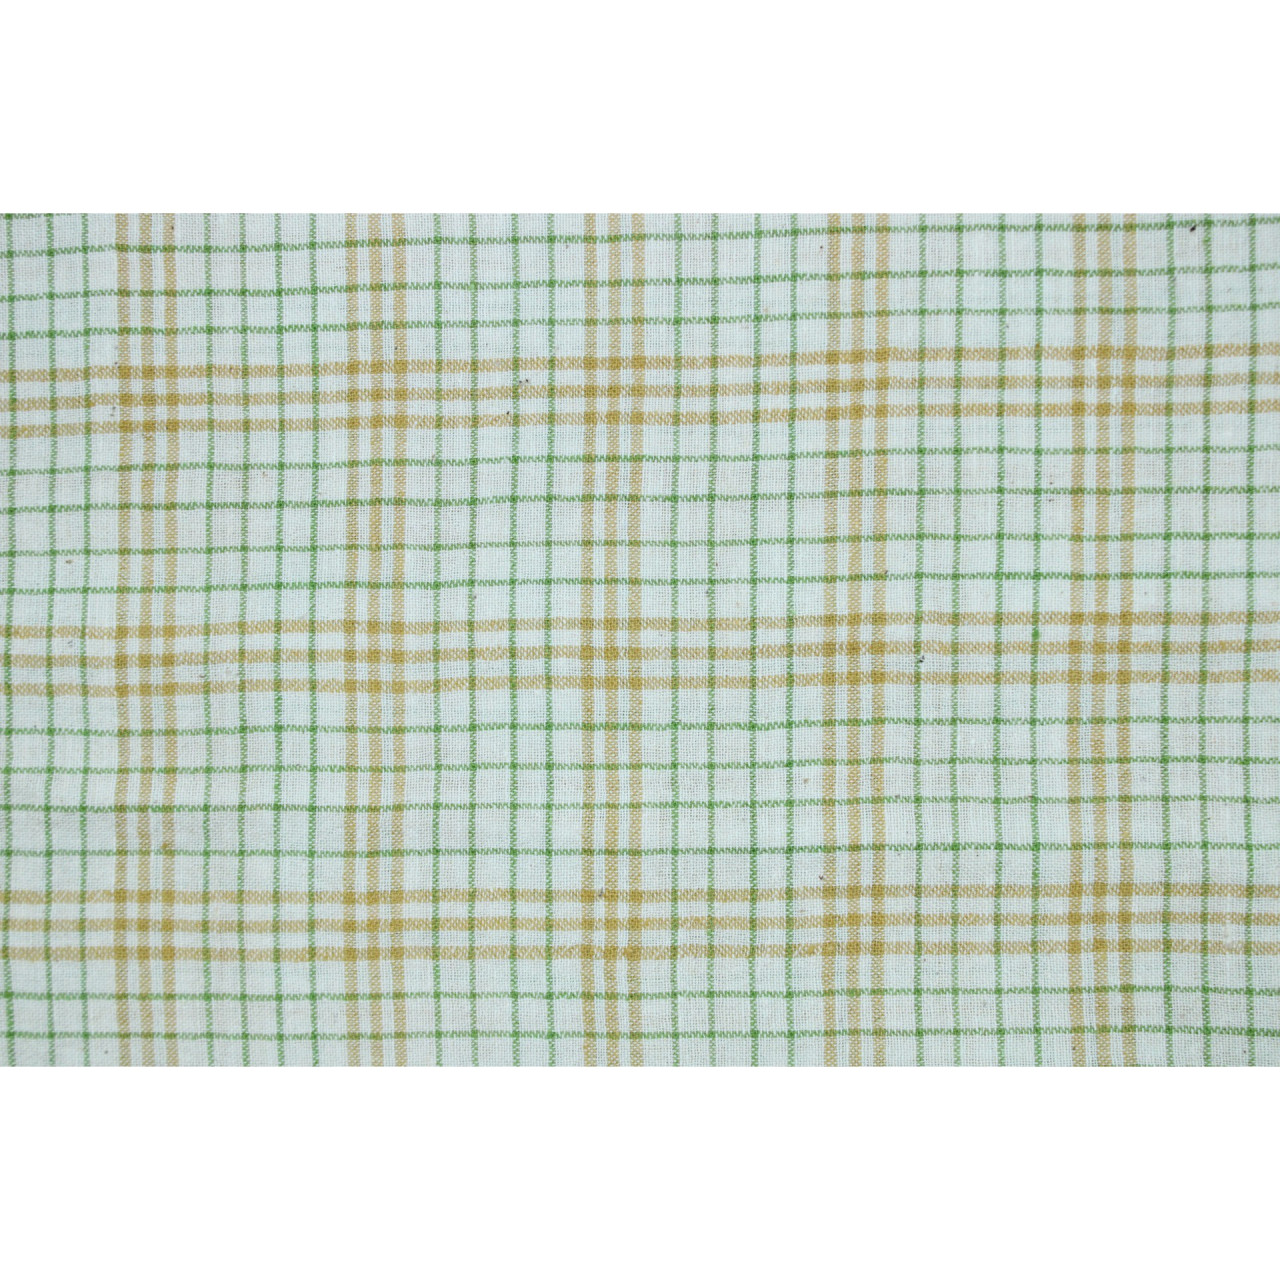 (2123) Kala cotton Azo-free dyed Kutchy yardage from Kutch - Yellow, green, white, checks